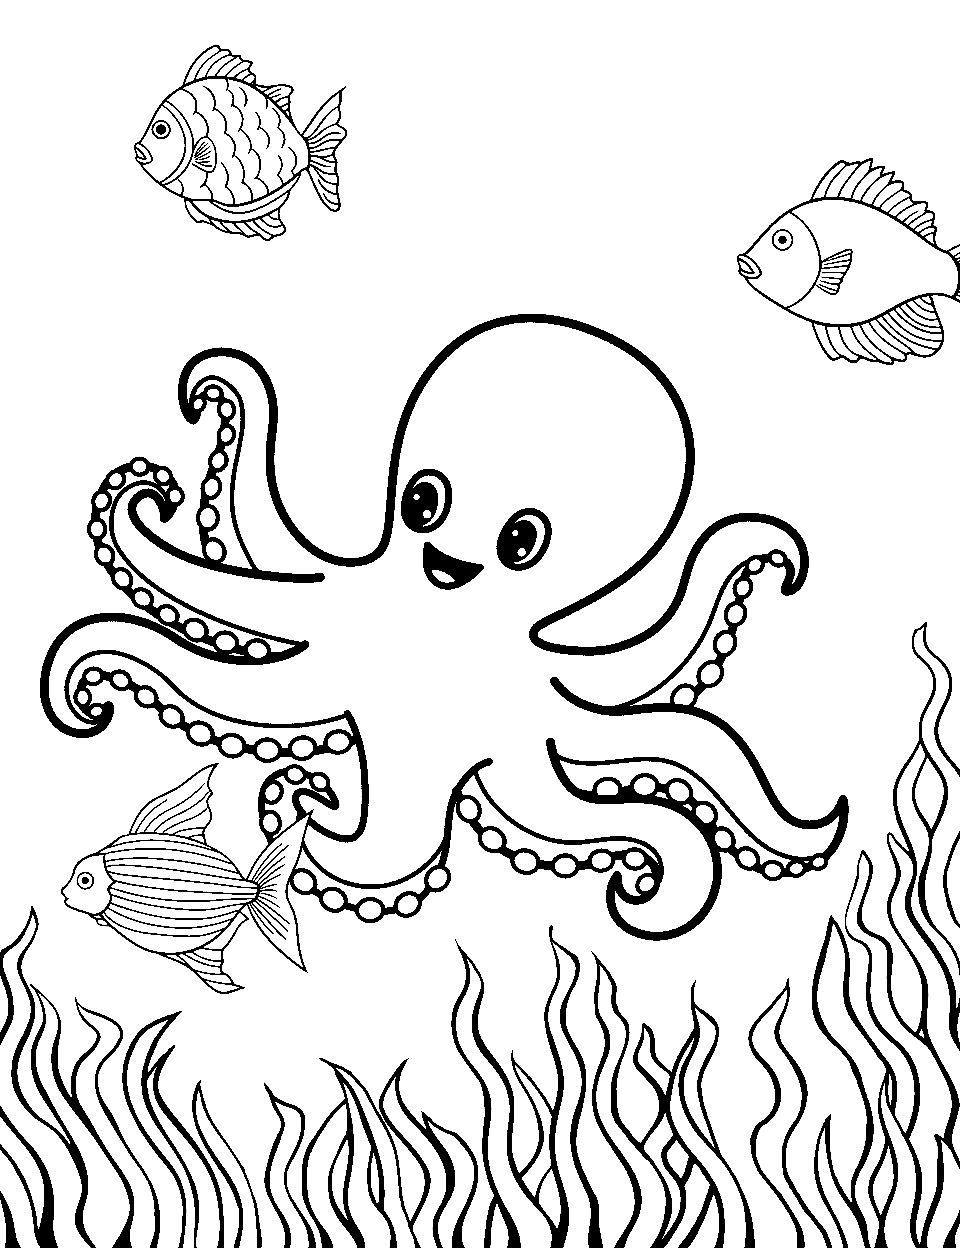 Octopus Garden Adventure Ocean Coloring Page - An octopus sitting in a garden of underwater plants.